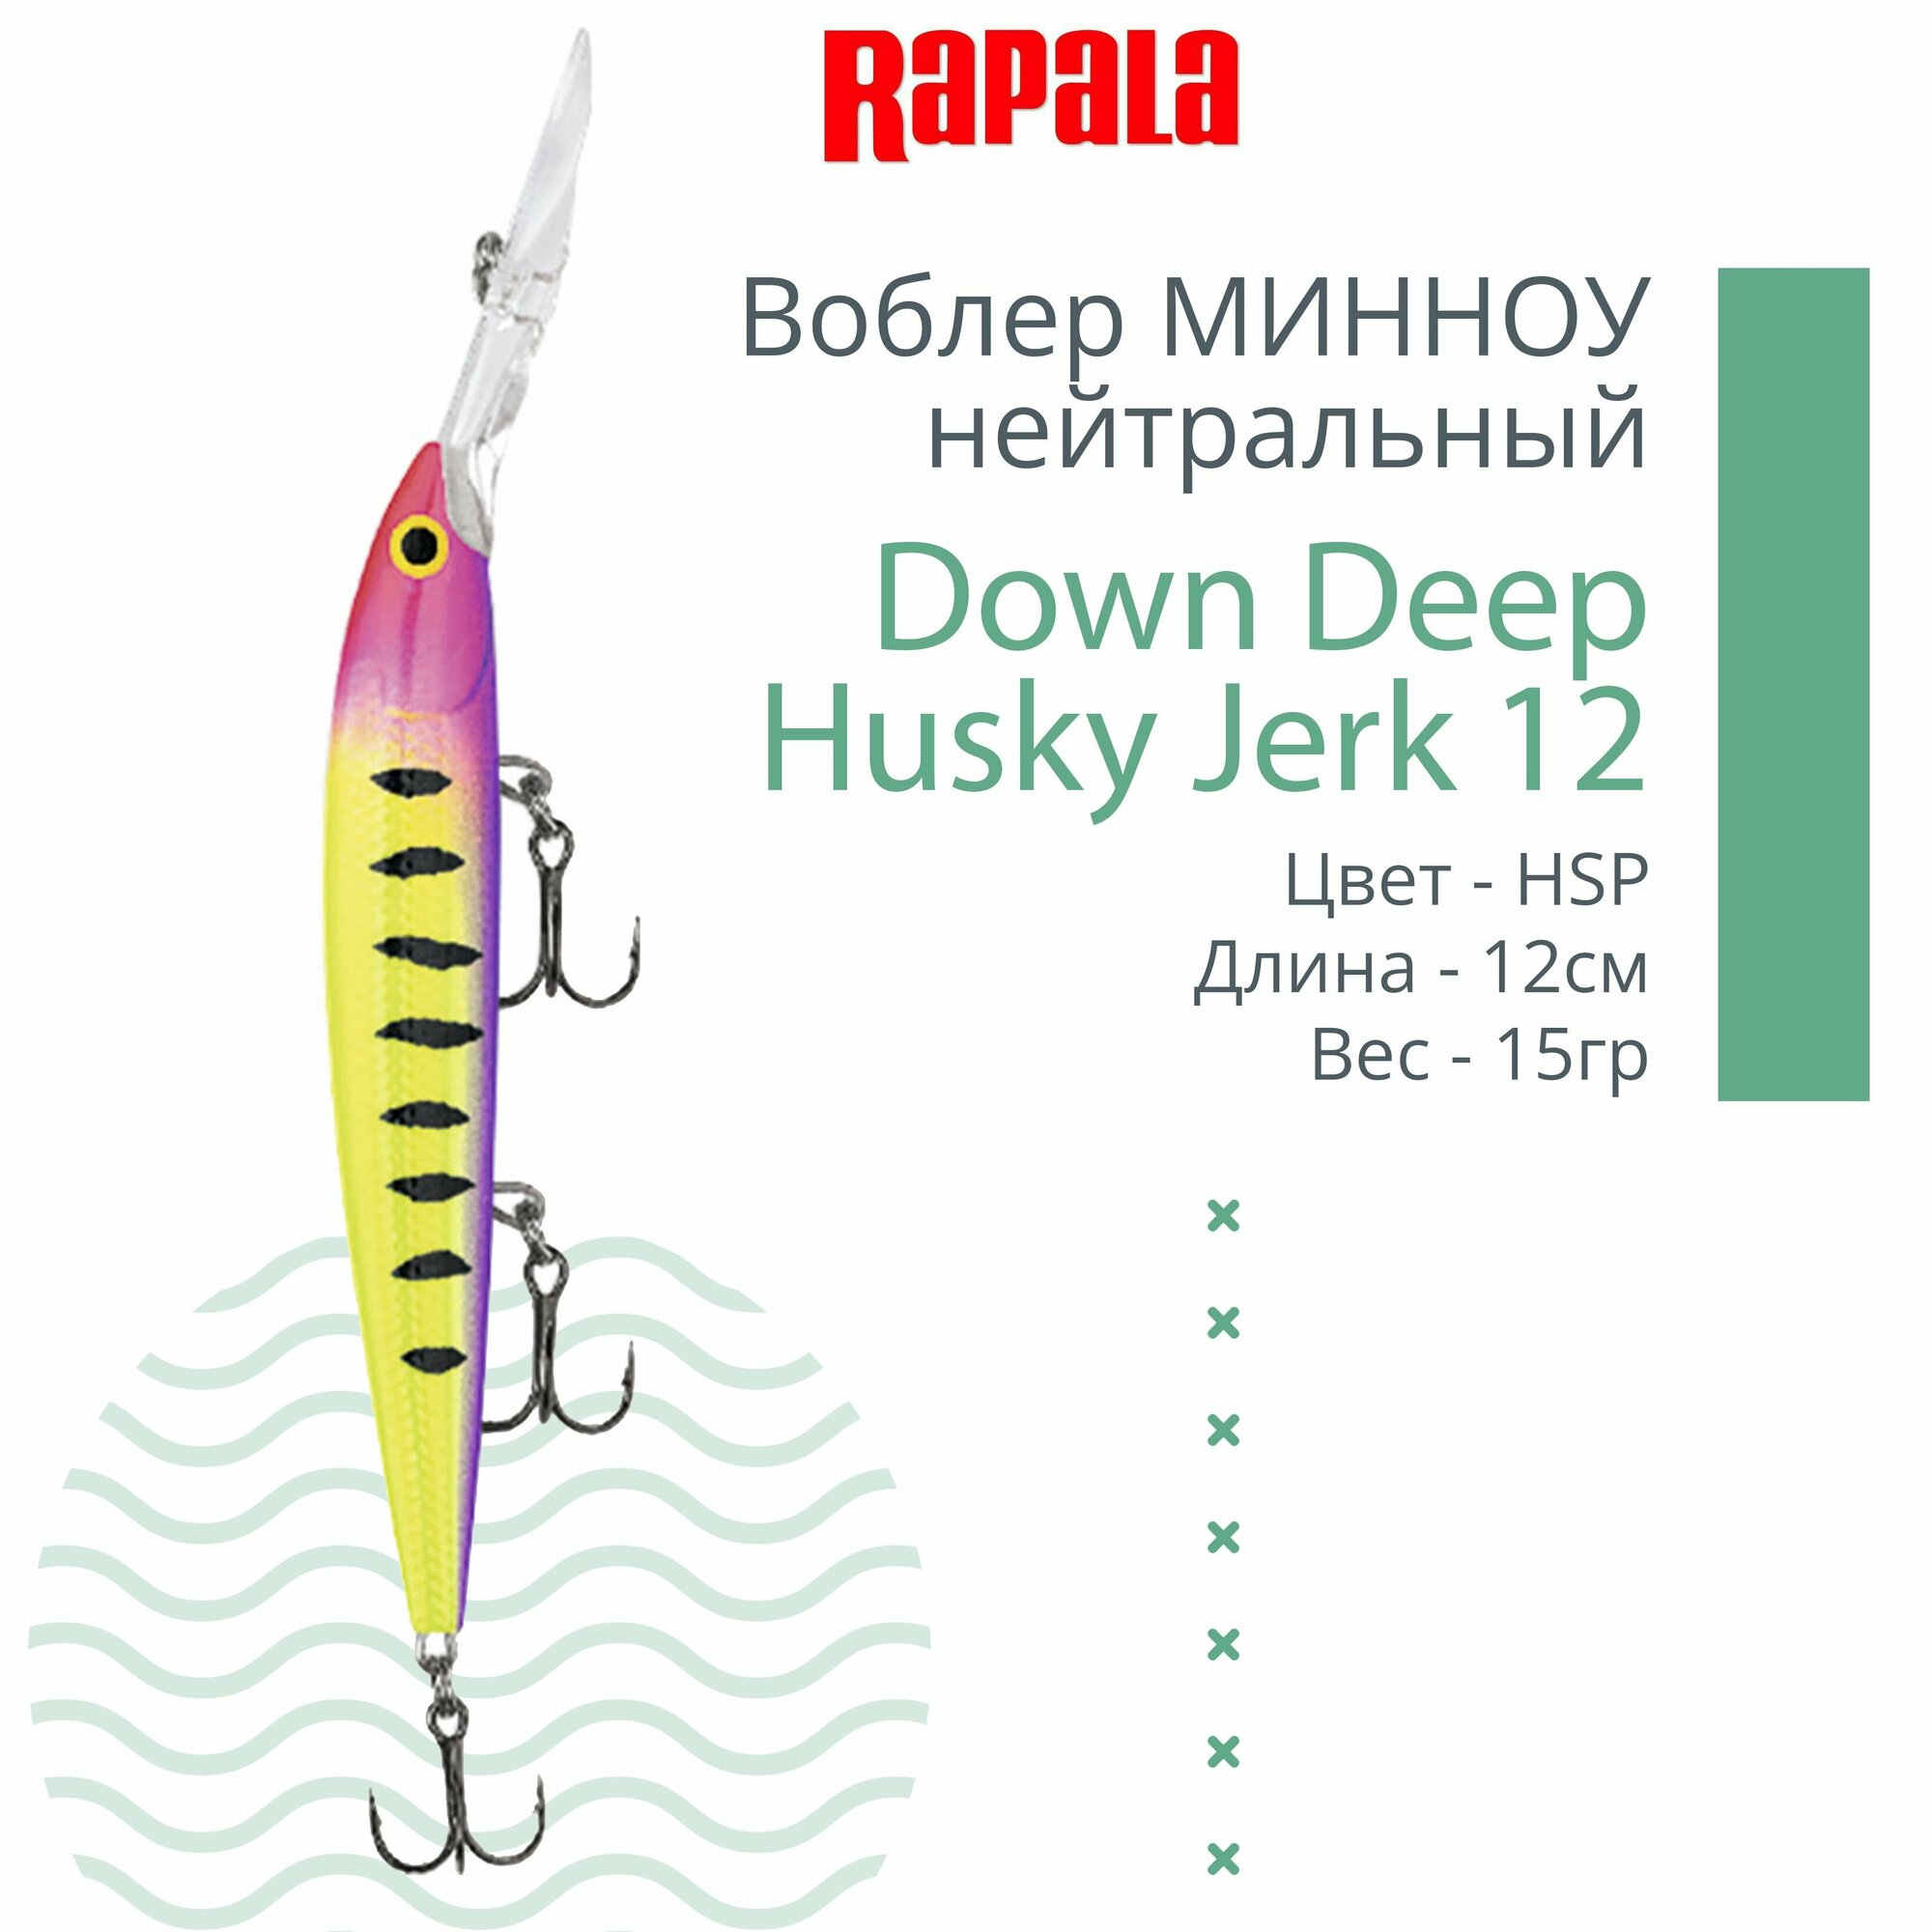 Воблер для рыбалки RAPALA Down Deep Husky Jerk 12, 12см, 15гр, цвет HSP, нейтральный